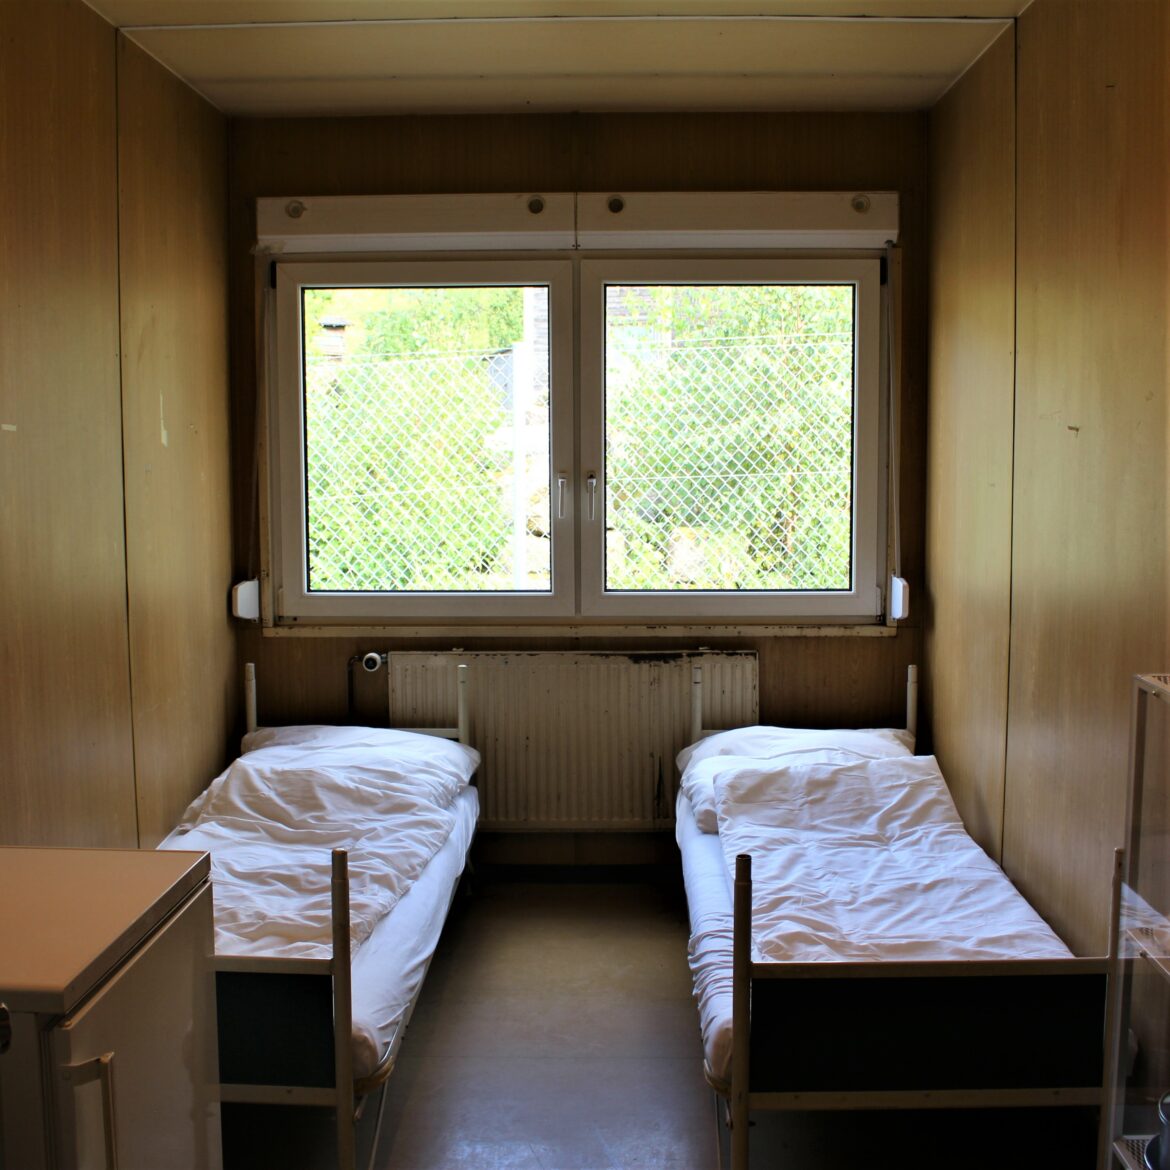 Karg eingerichtetes Zimmer aus dem Container für Geflüchtete mit zwei Betten und einem Tisch.